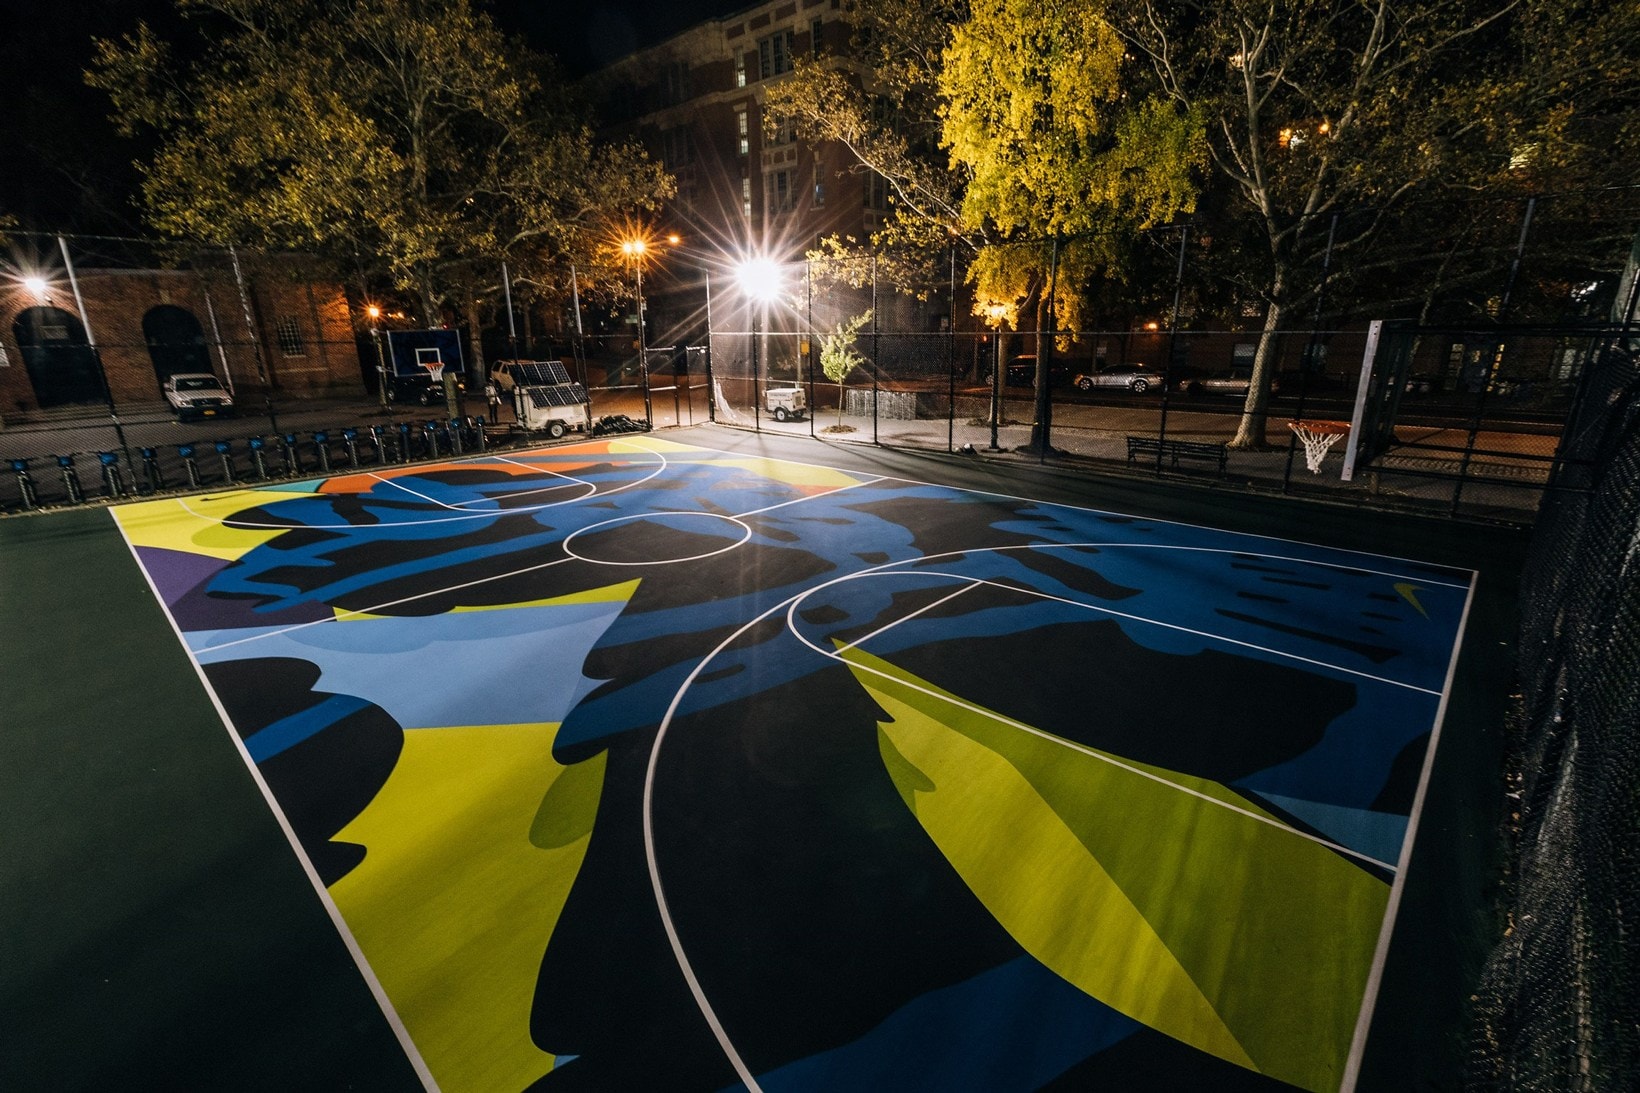 Nike KAWS New York City's Stanton Street Courts